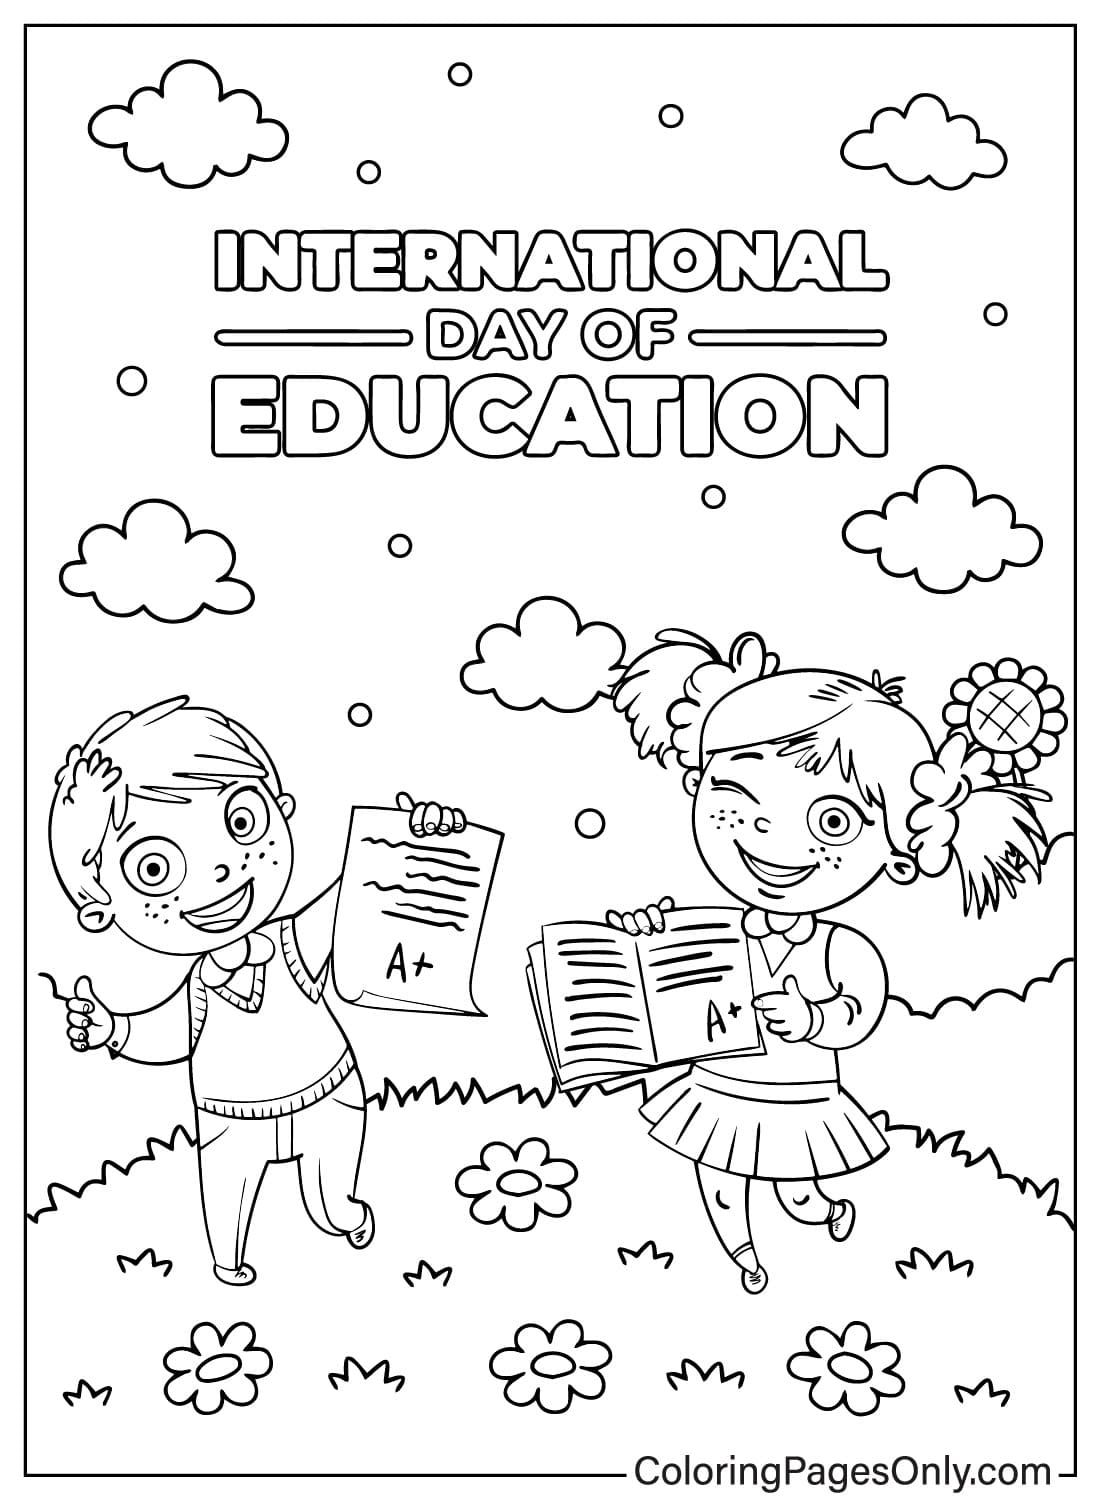 Páginas para colorear del Día Internacional de la Educación para descargar del Día Internacional de la Educación